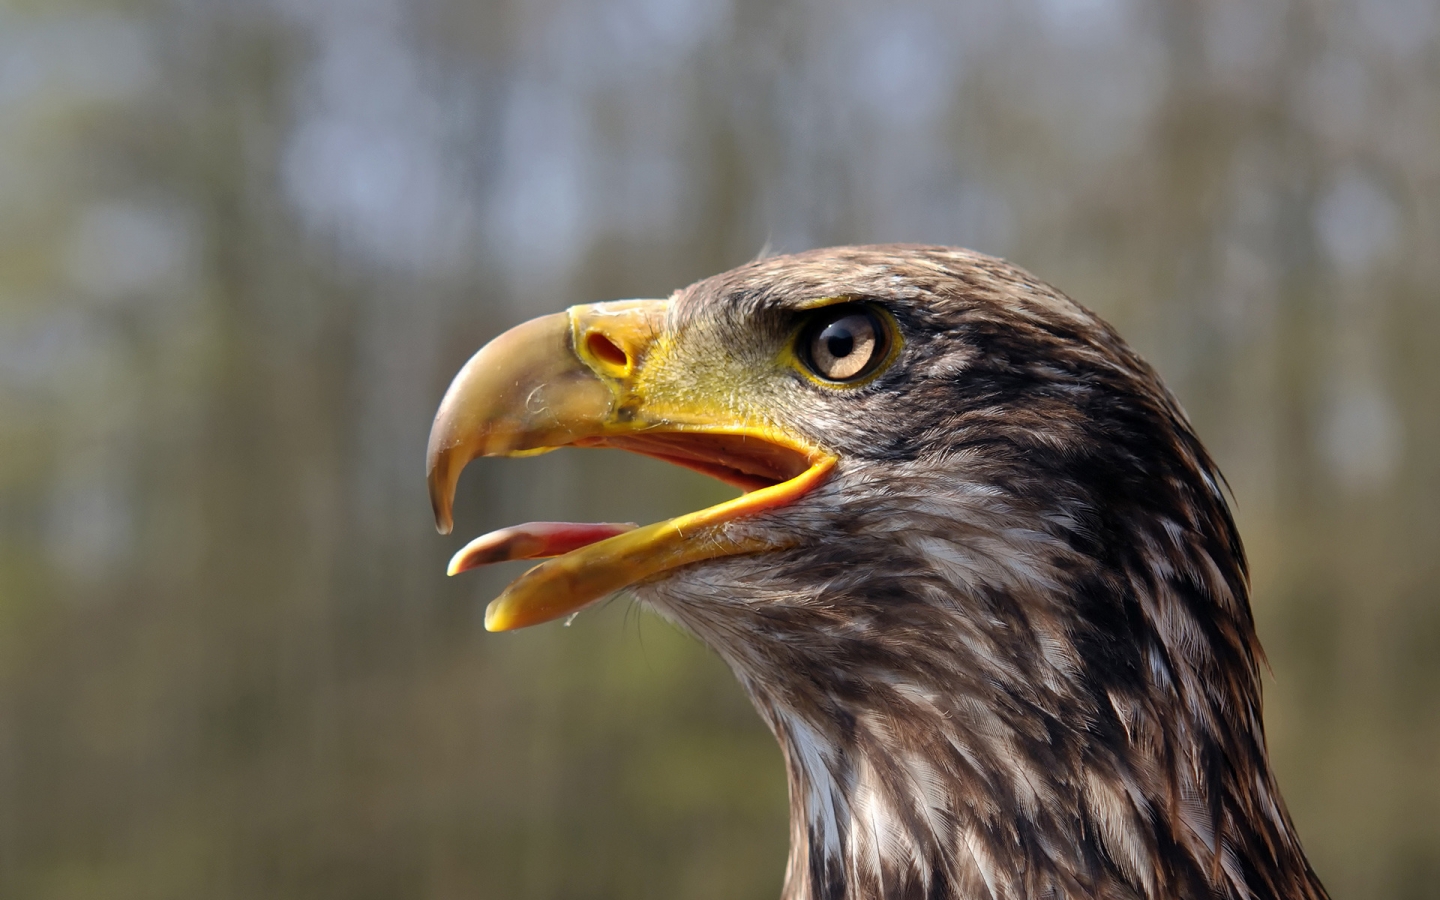 Juvenile Bald Eagle for 1440 x 900 widescreen resolution